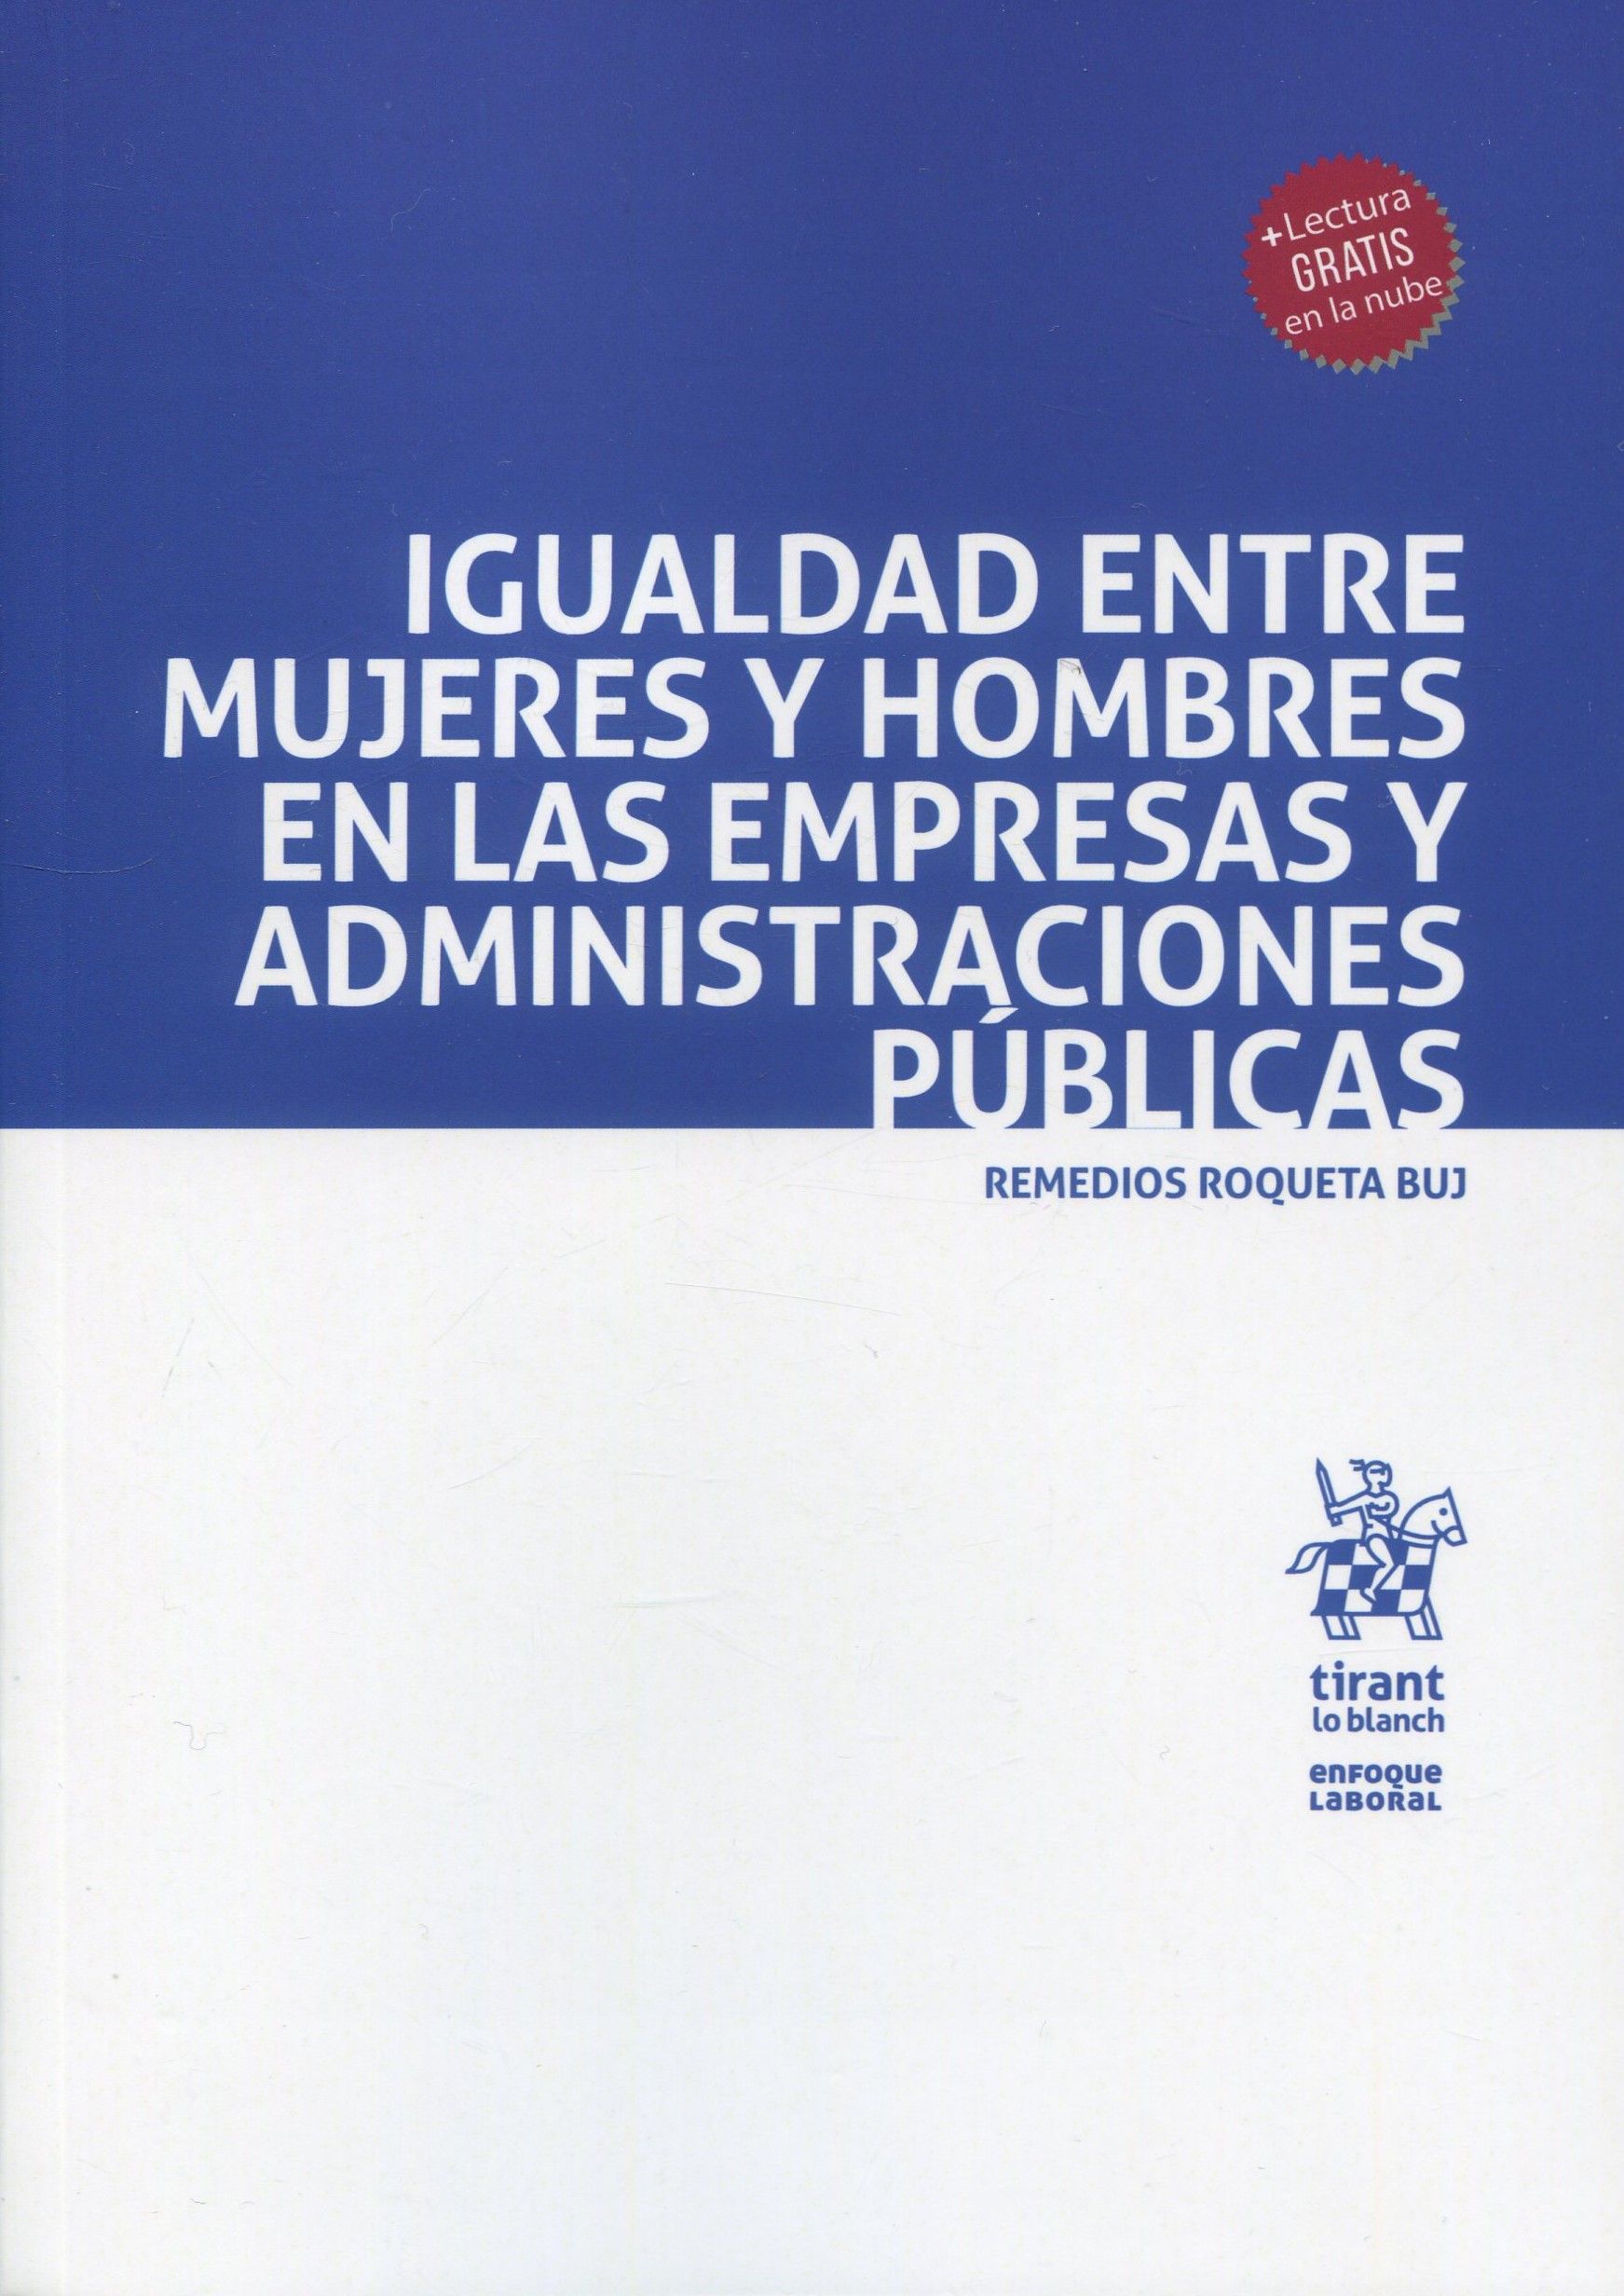 Imagen de portada del libro Igualdad entre hombres y mujeres en las empresas y administraciones públicas